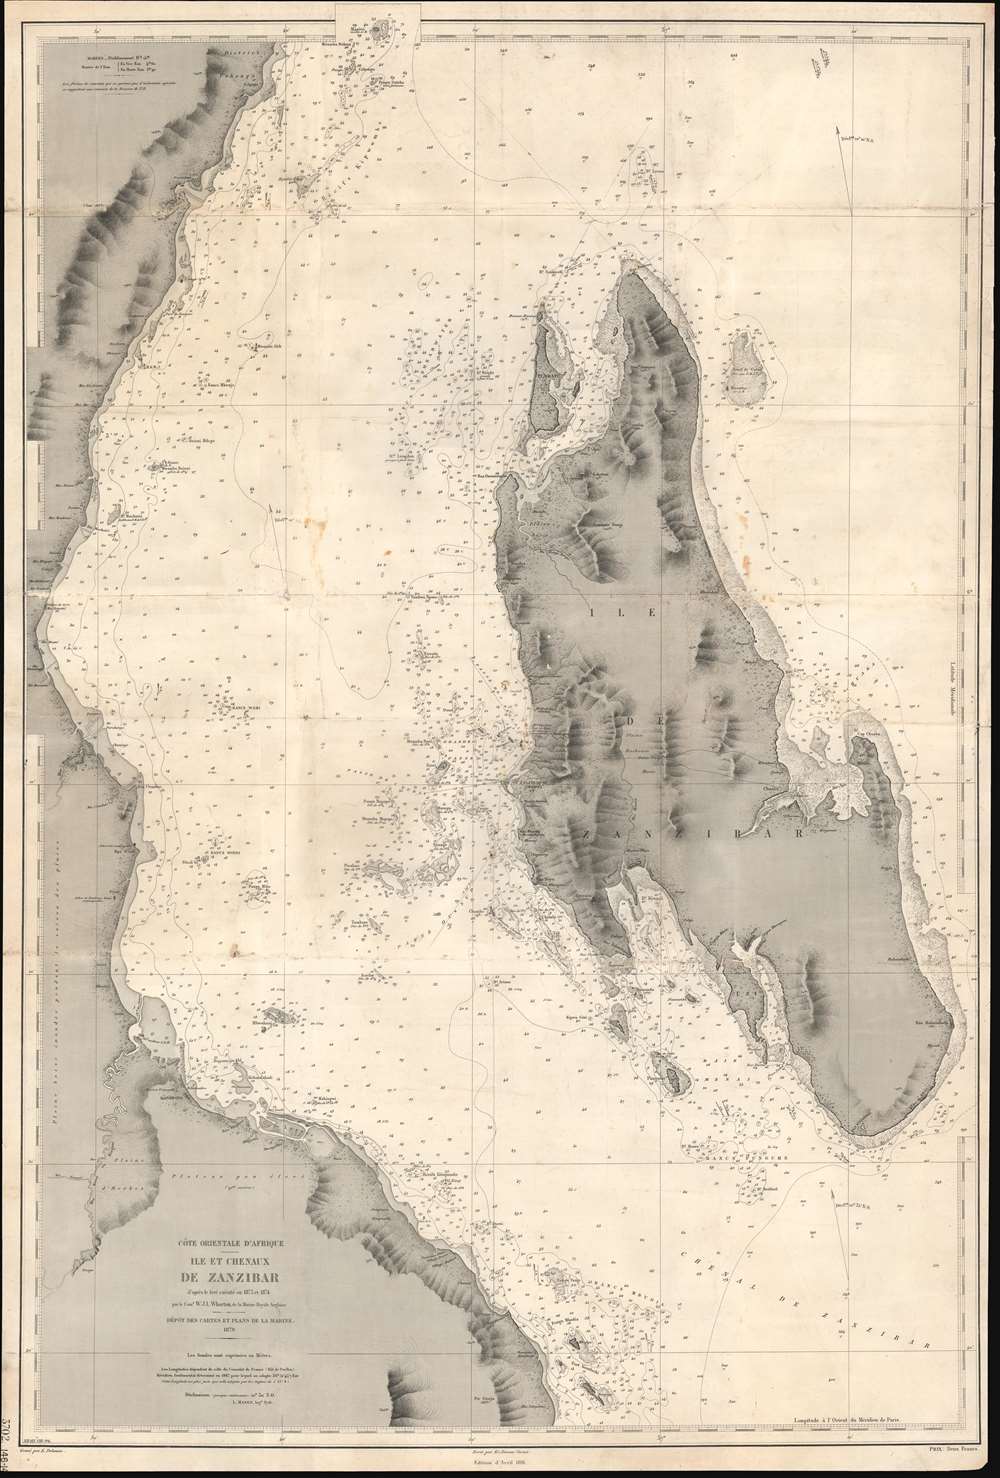 Côte Orientale d'Afrique. Ile et Chenaux de Zanzibar d'aprés le levé exécuté en 1873 et 1874. - Main View